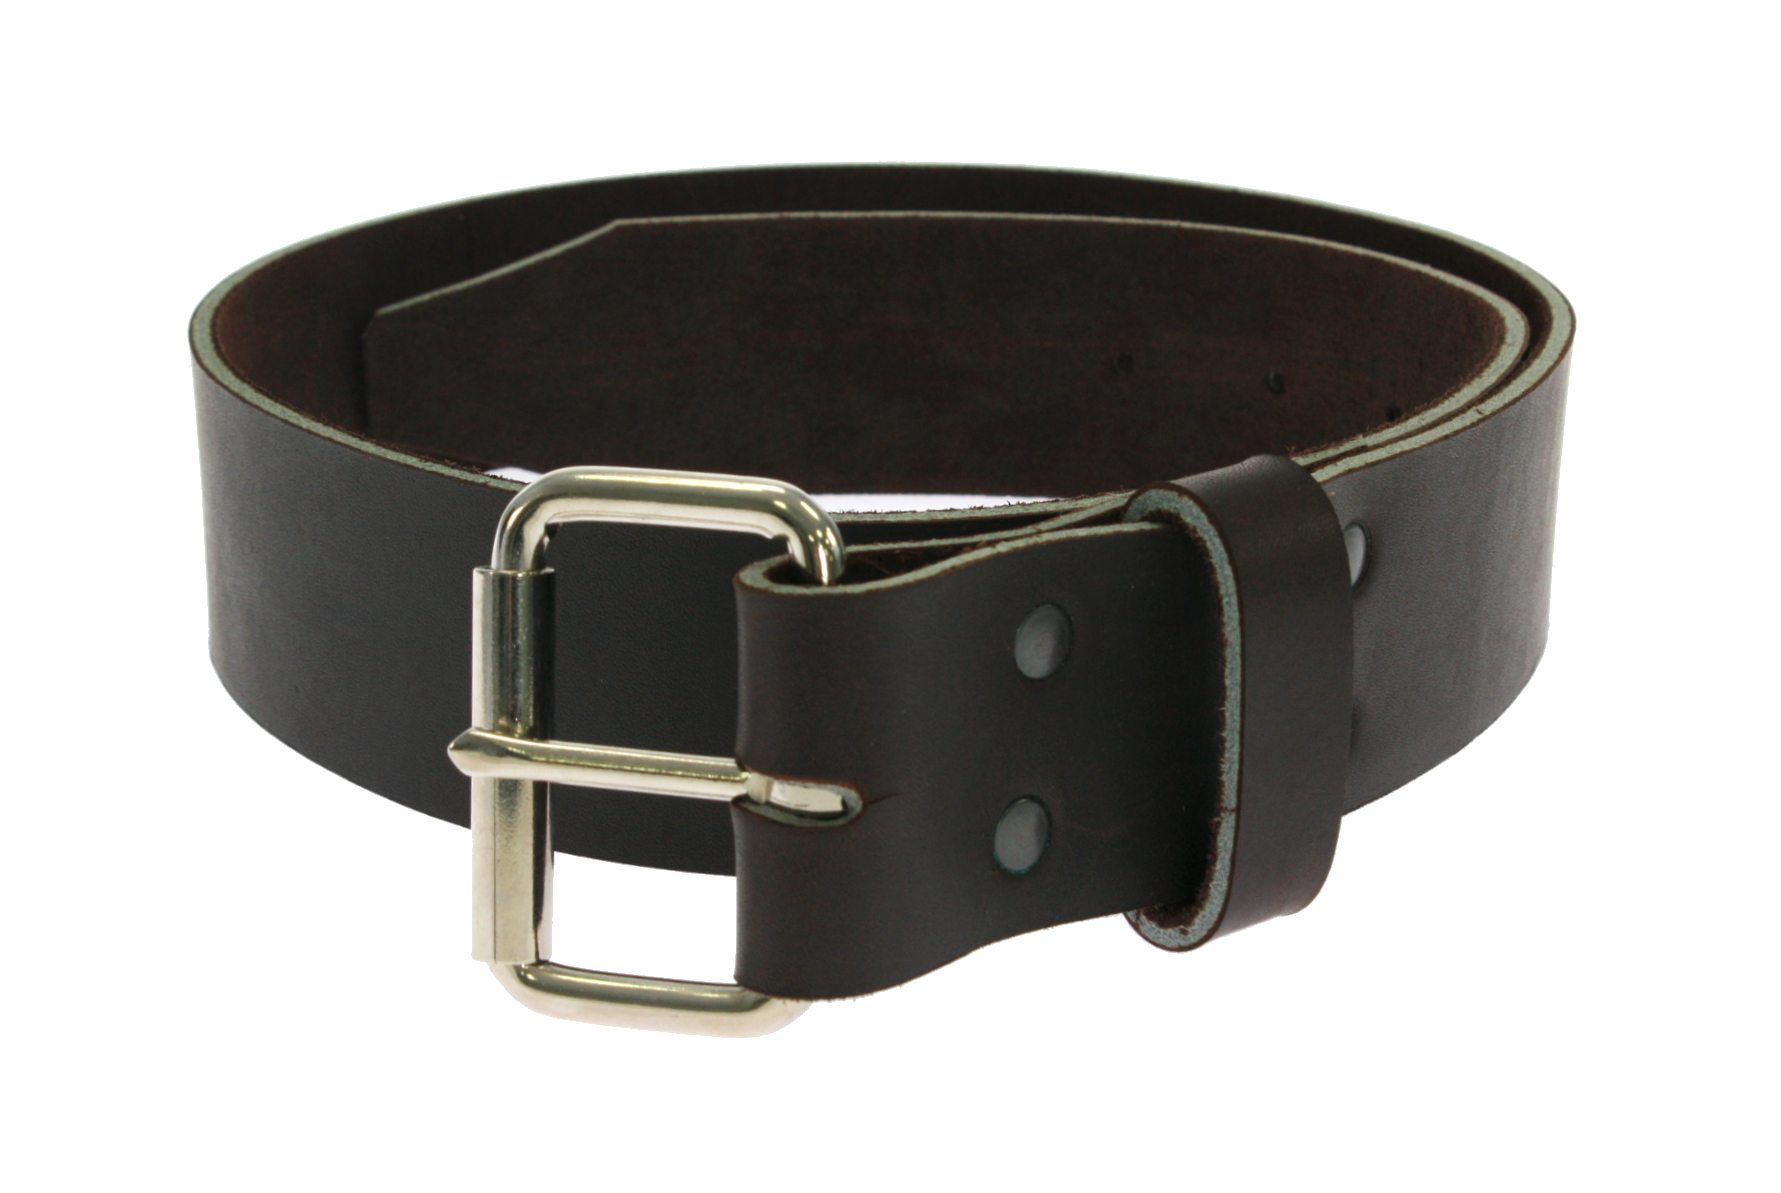 Rigger's leather belt